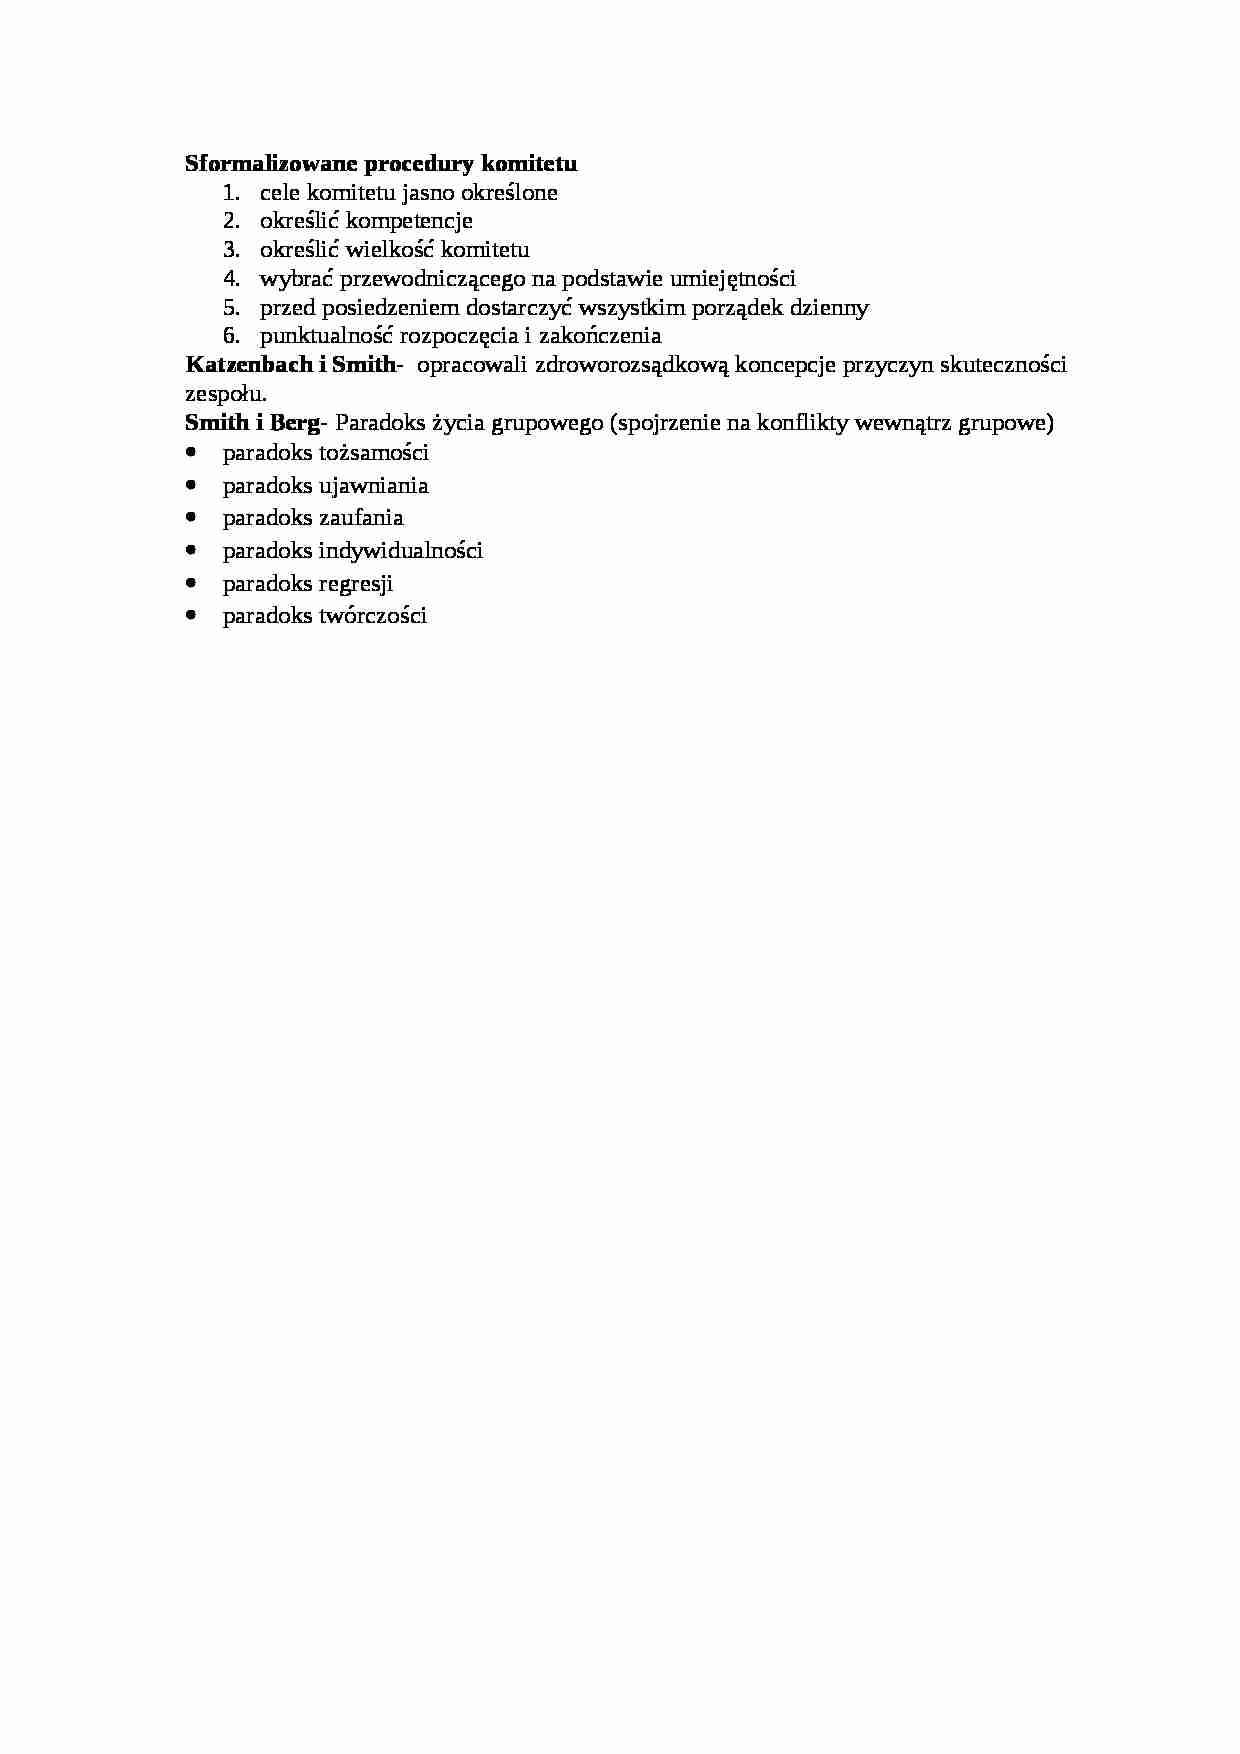 Sformalizowane procedury komitetu - omówienie - strona 1